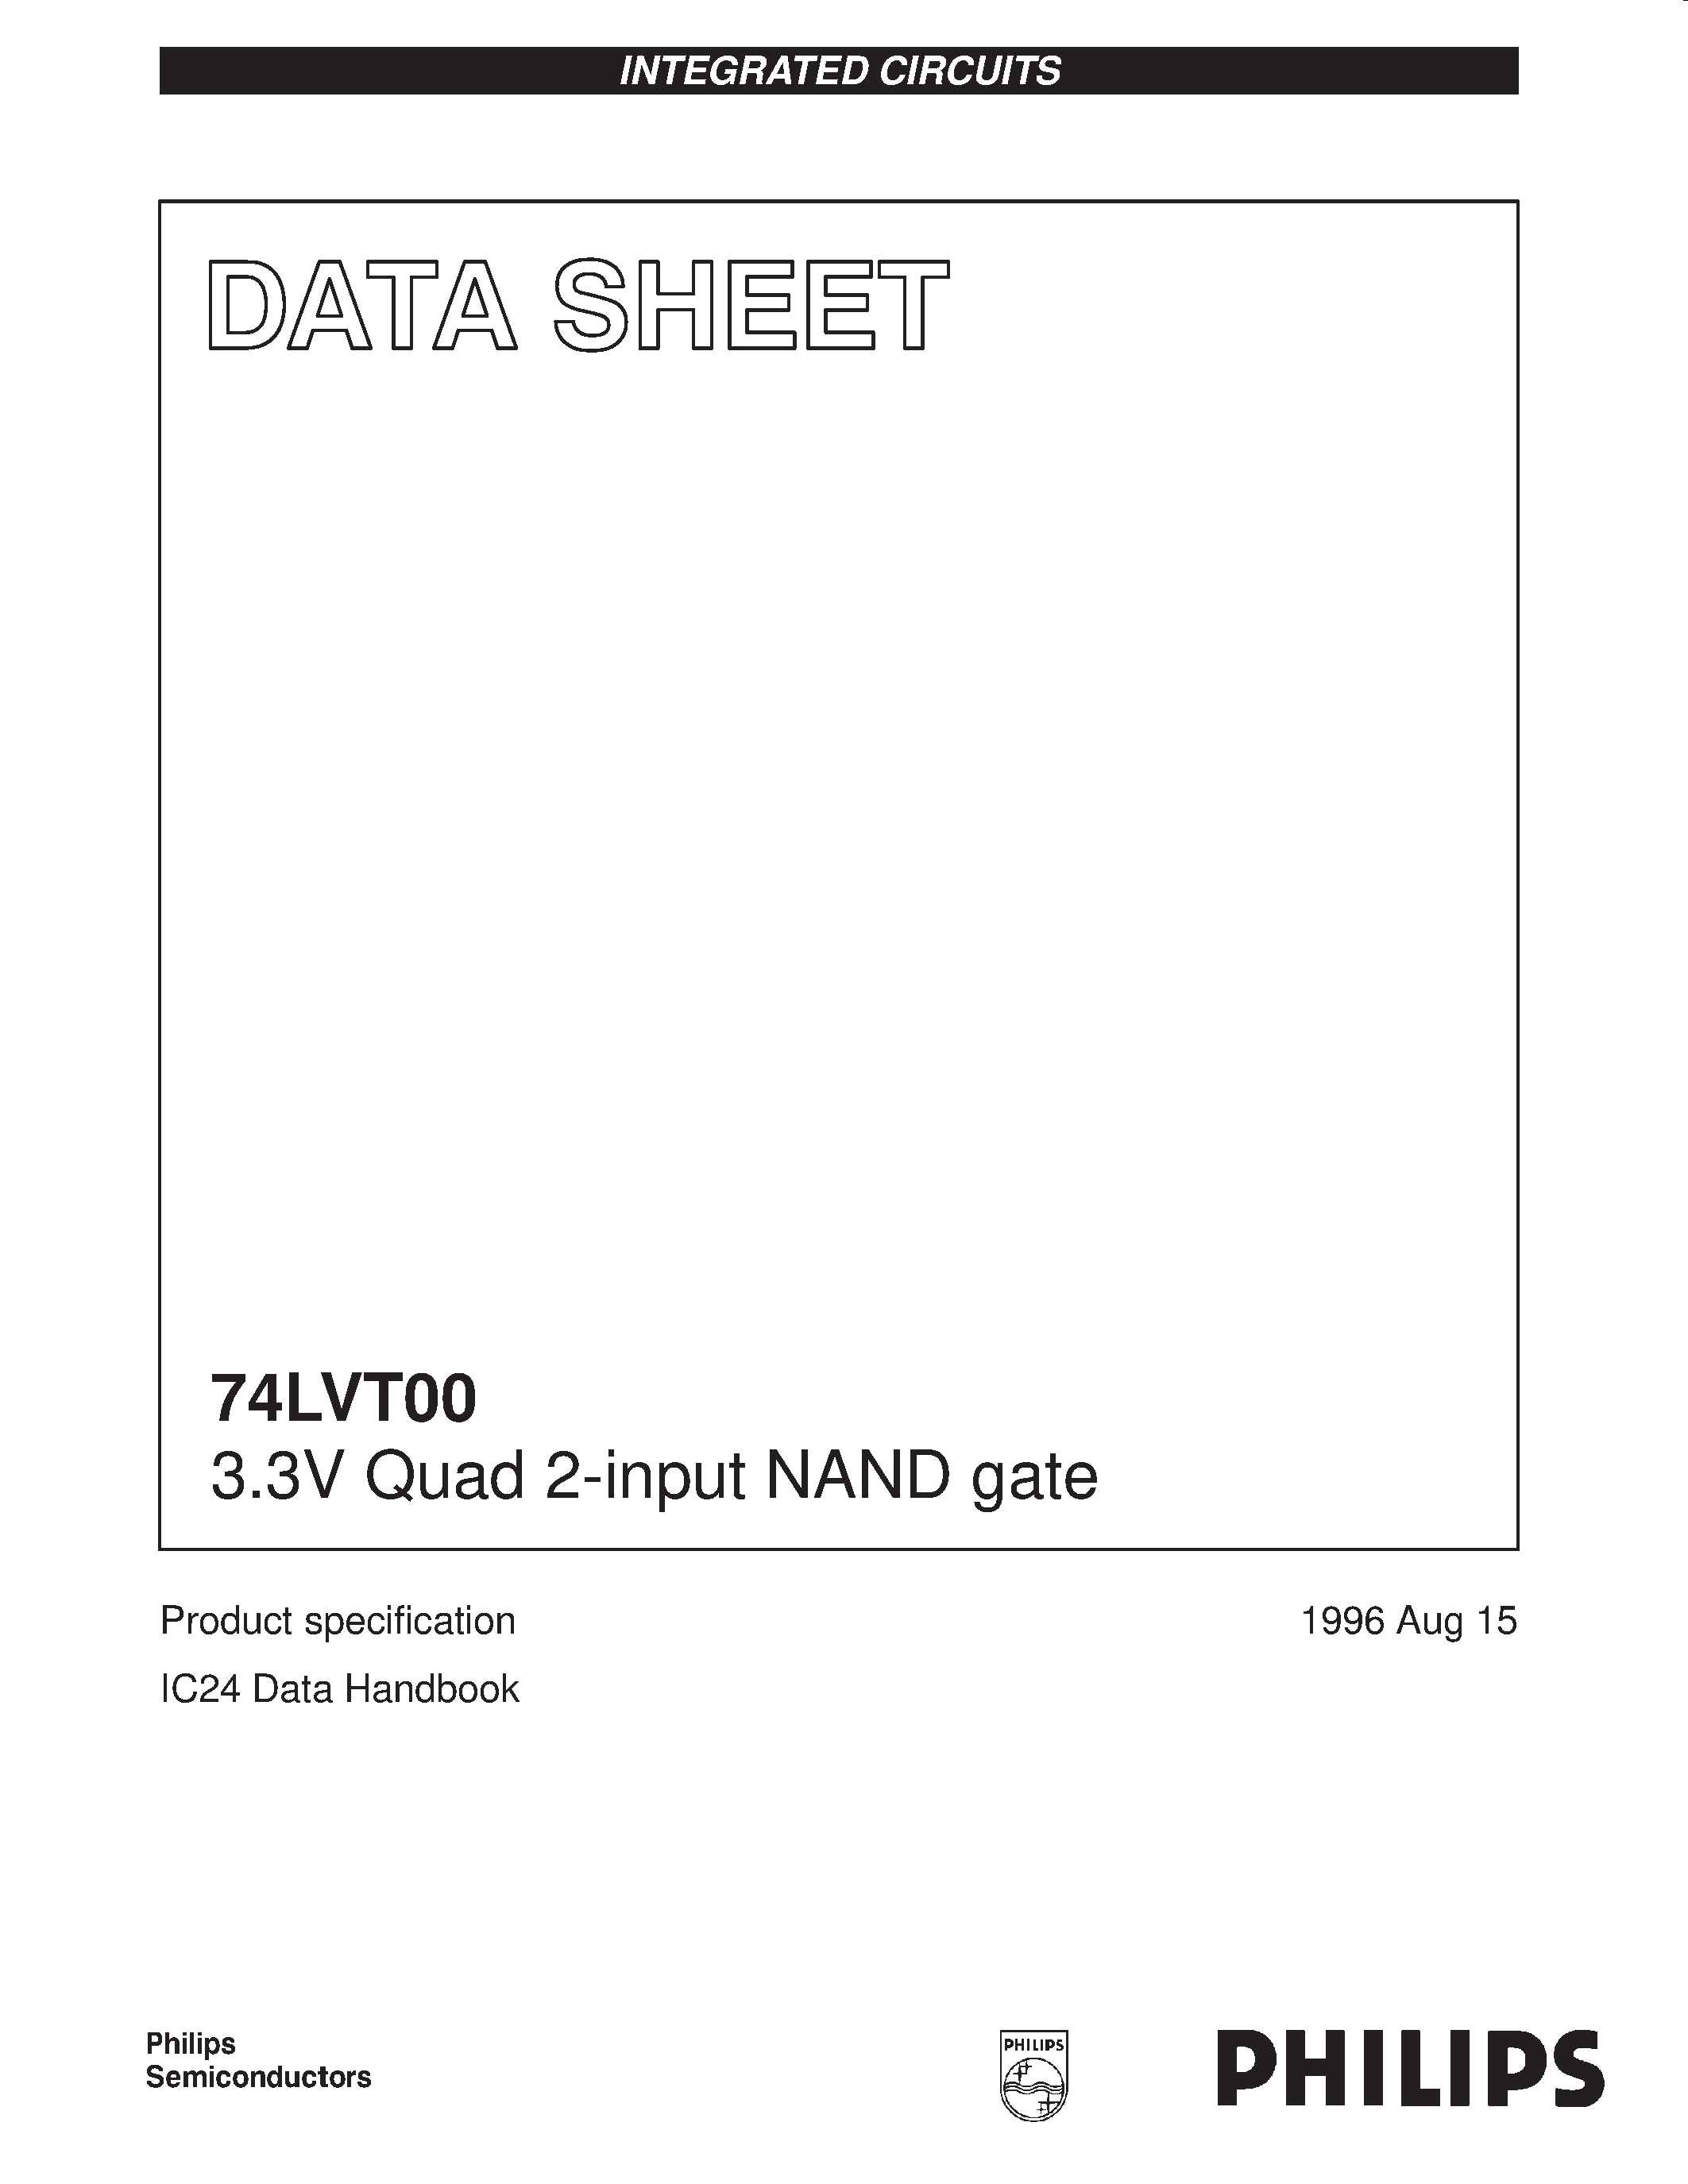 Даташит 74LVT00 - 3.3V Quad 2-input NAND gate страница 1